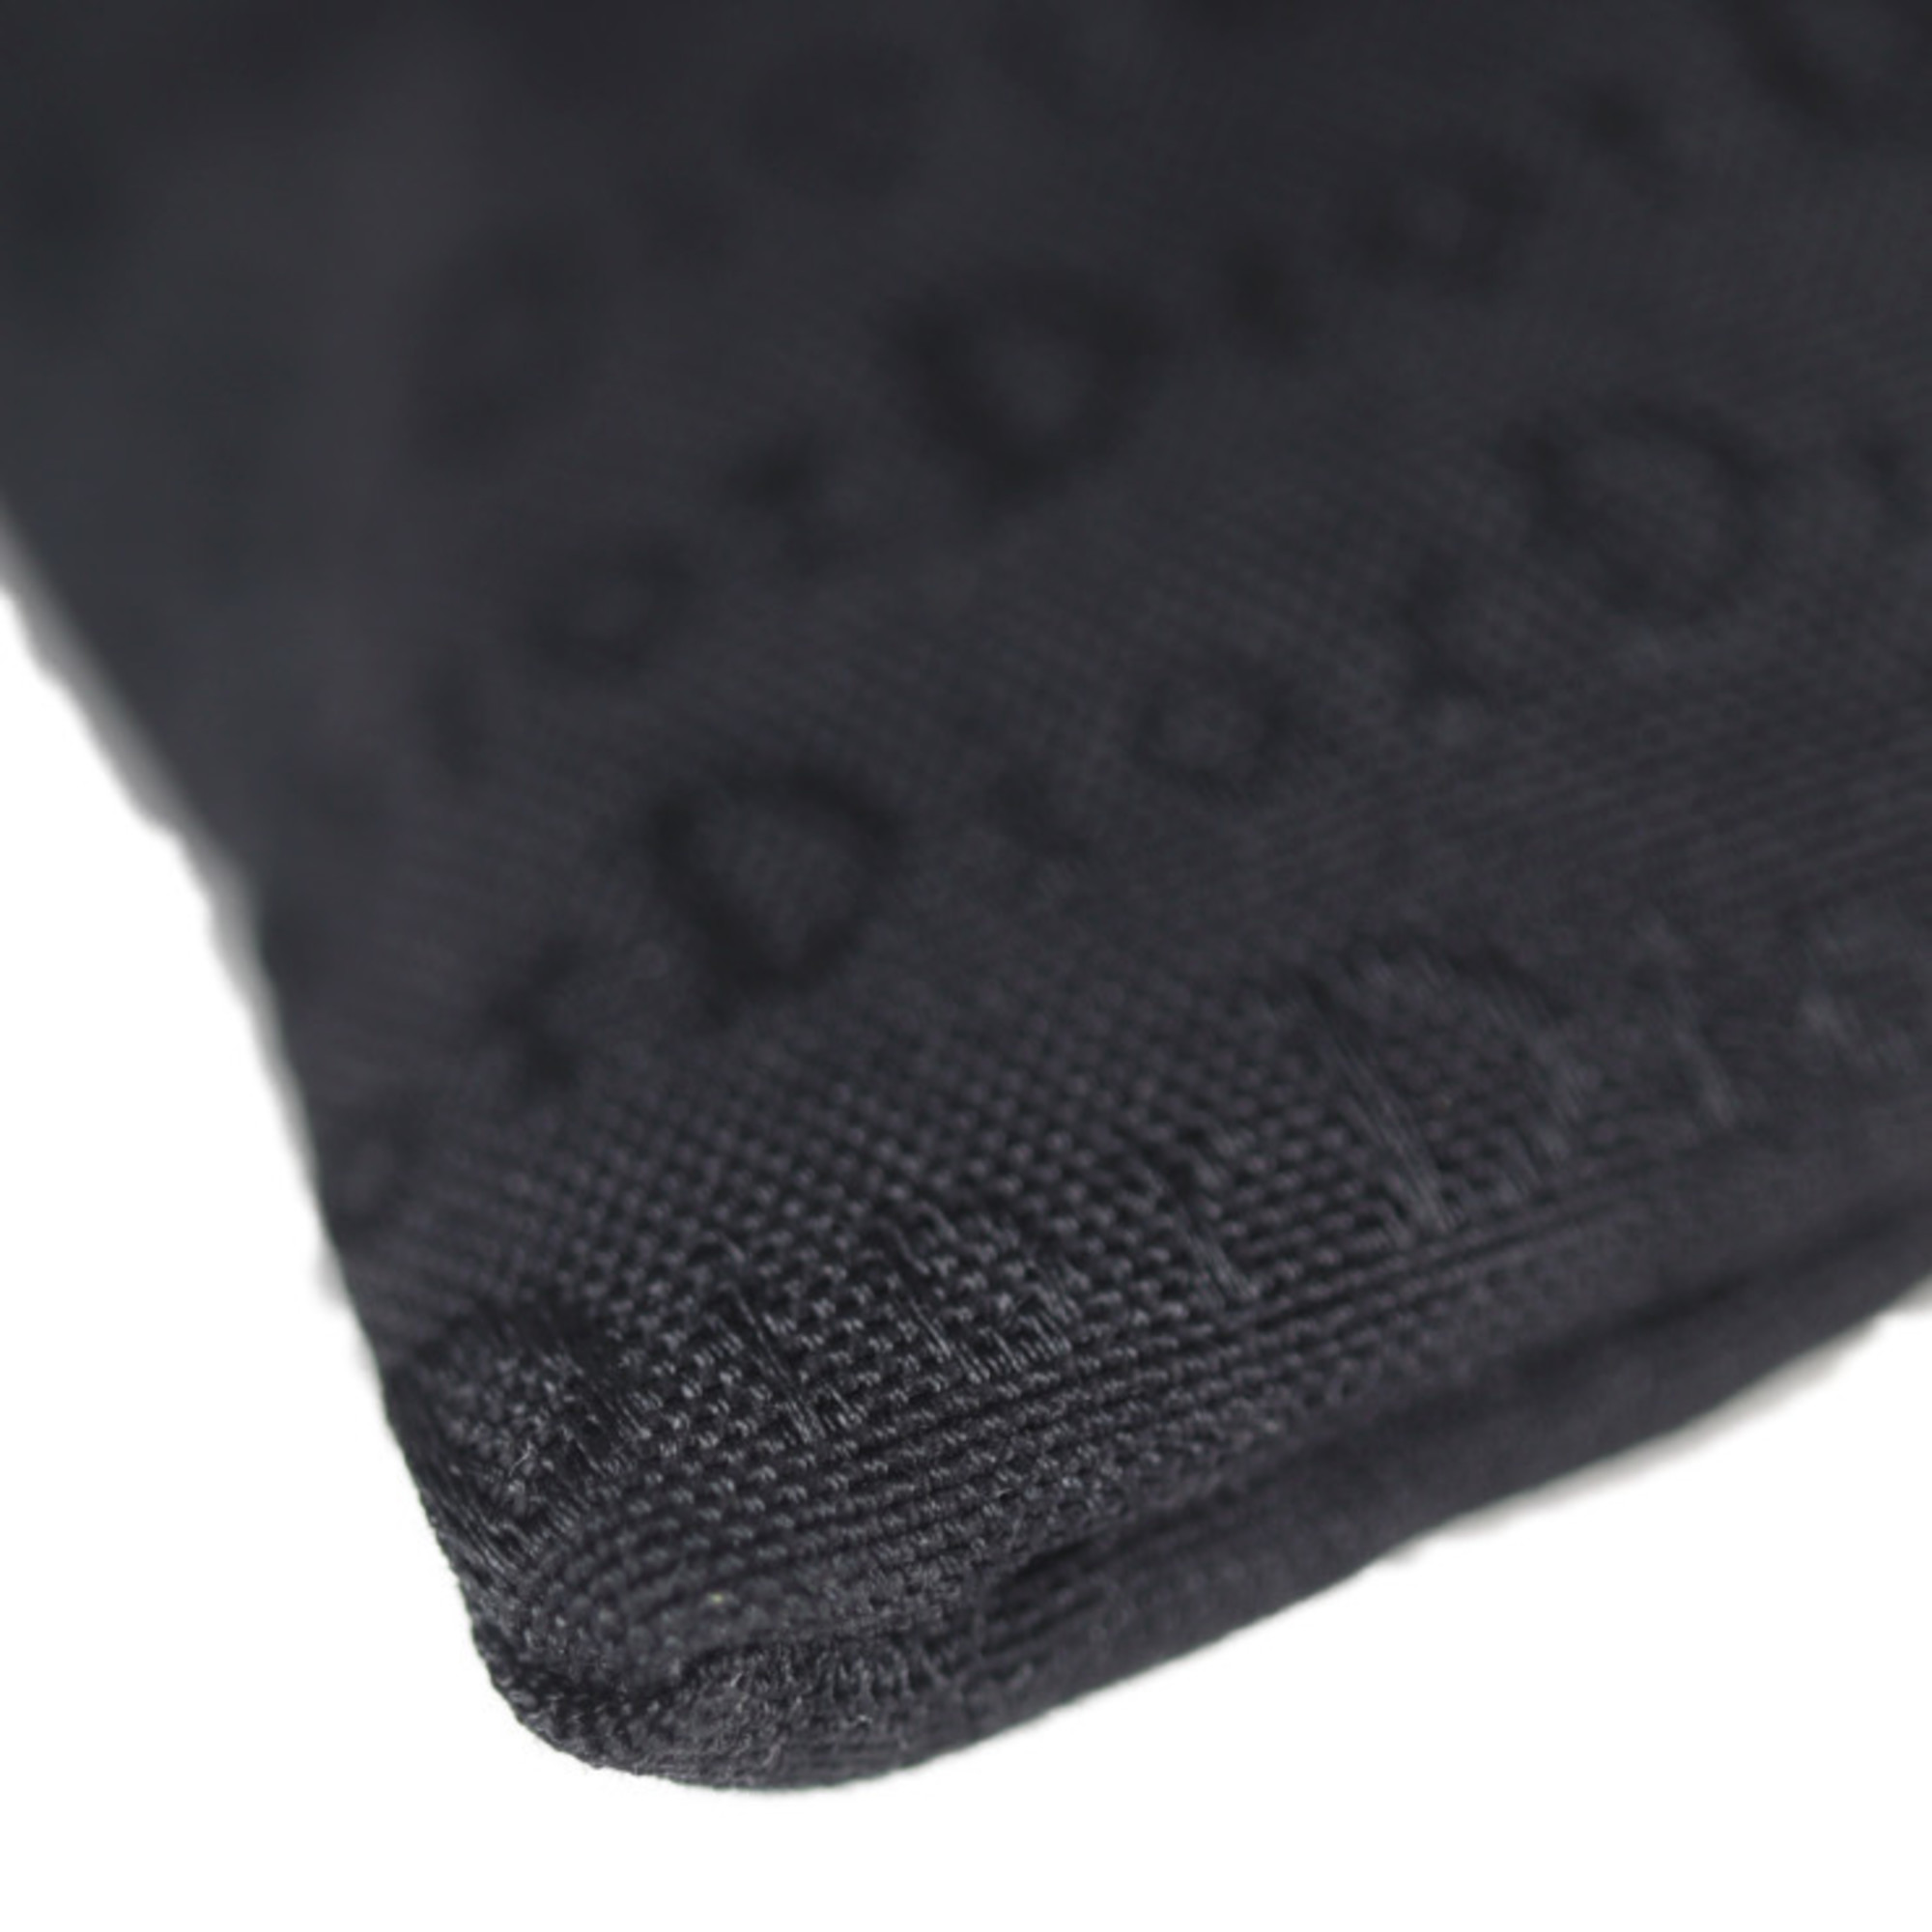 Christian Dior shoulder bag canvas black 2way